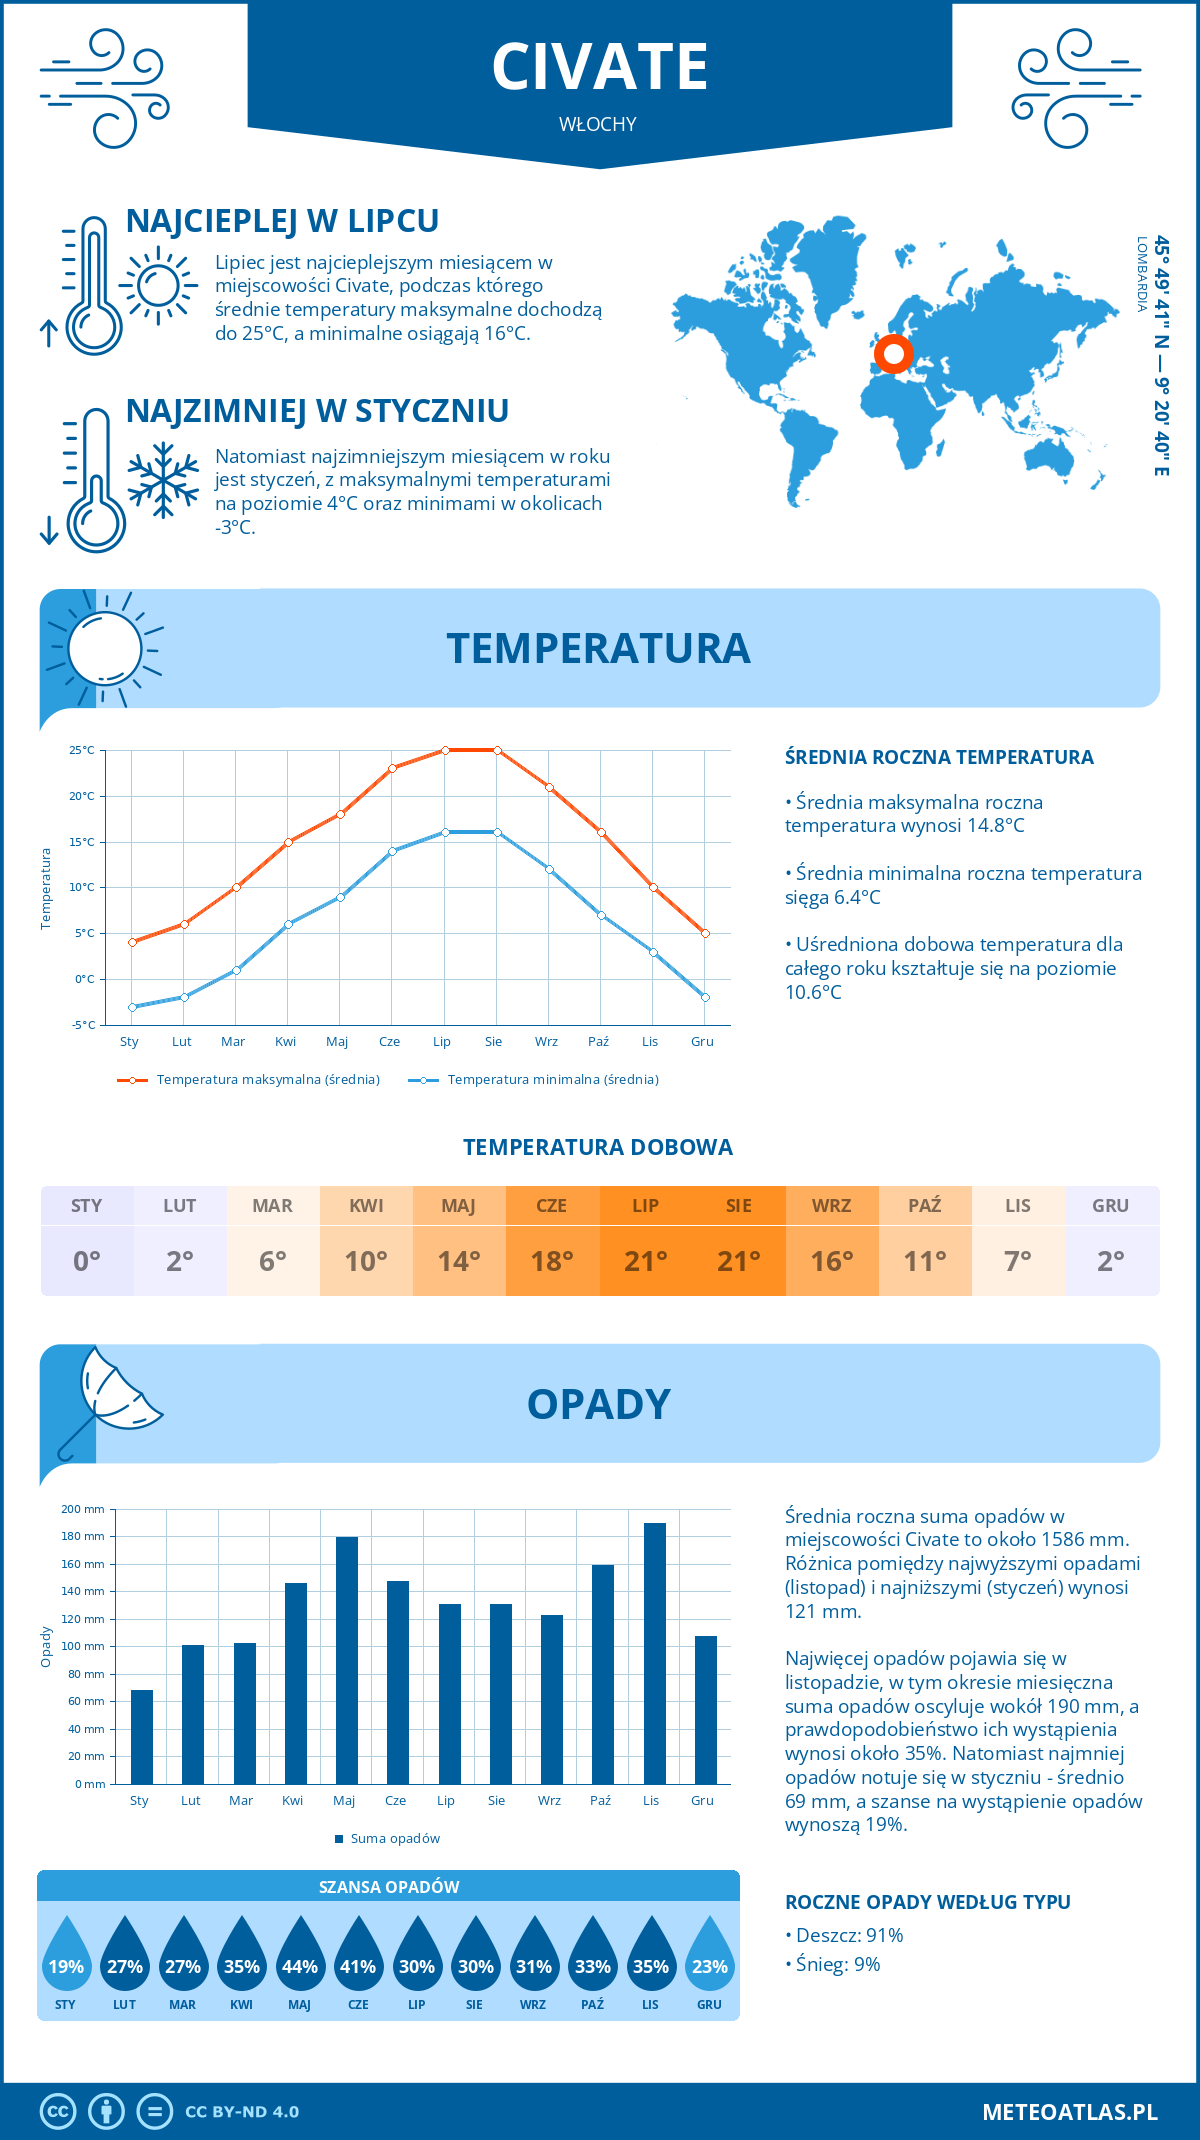 Pogoda Civate (Włochy). Temperatura oraz opady.